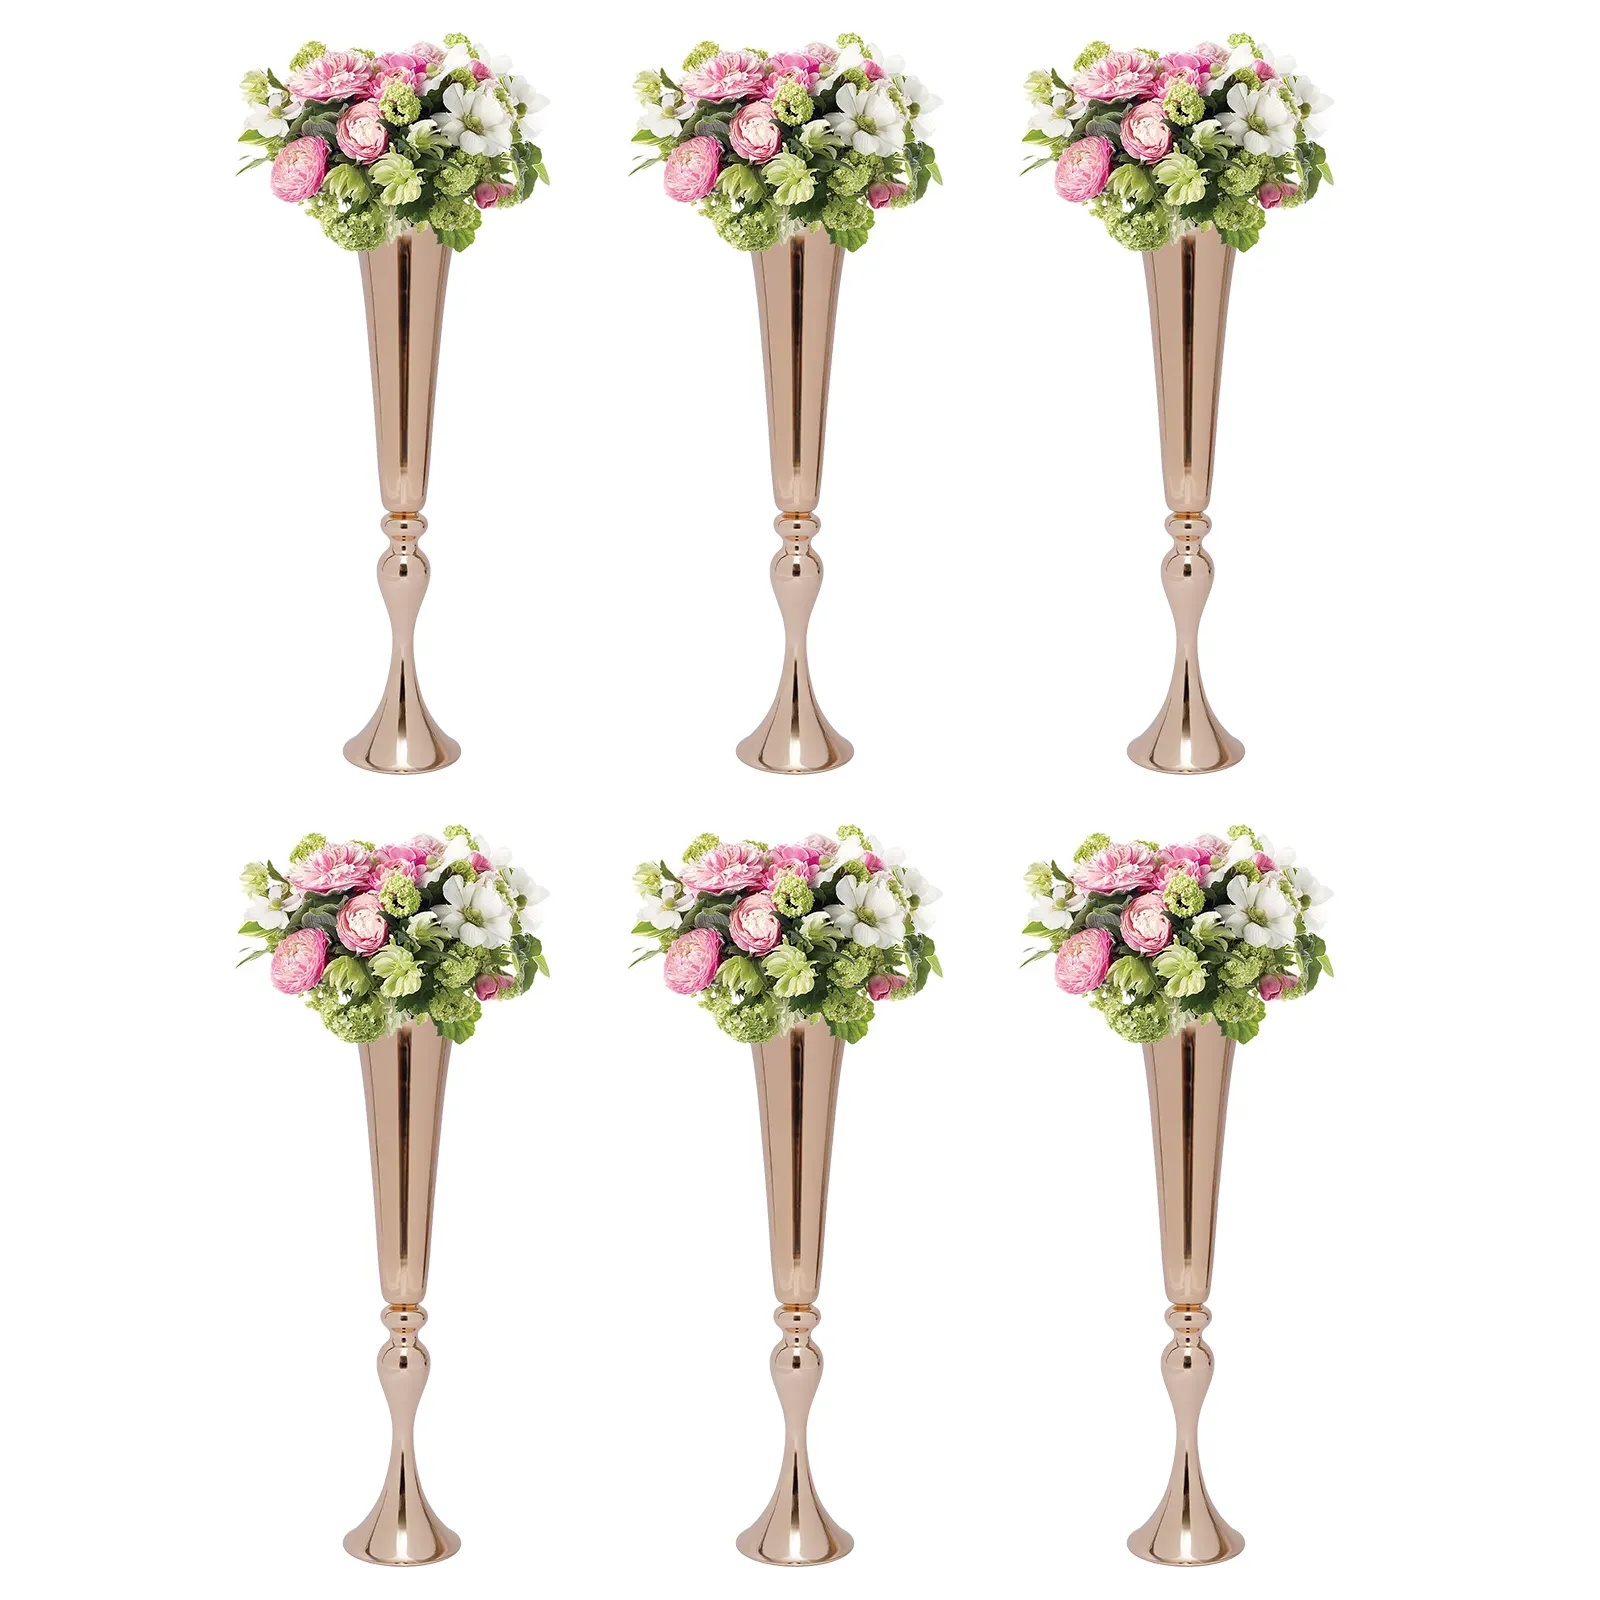 装飾ウェディングメタルトランペット花瓶デスクトップメタルトランペットセンターピースVaseウェルカムエリアロードガイドフラワーホルダーの高さ結婚式の小道具